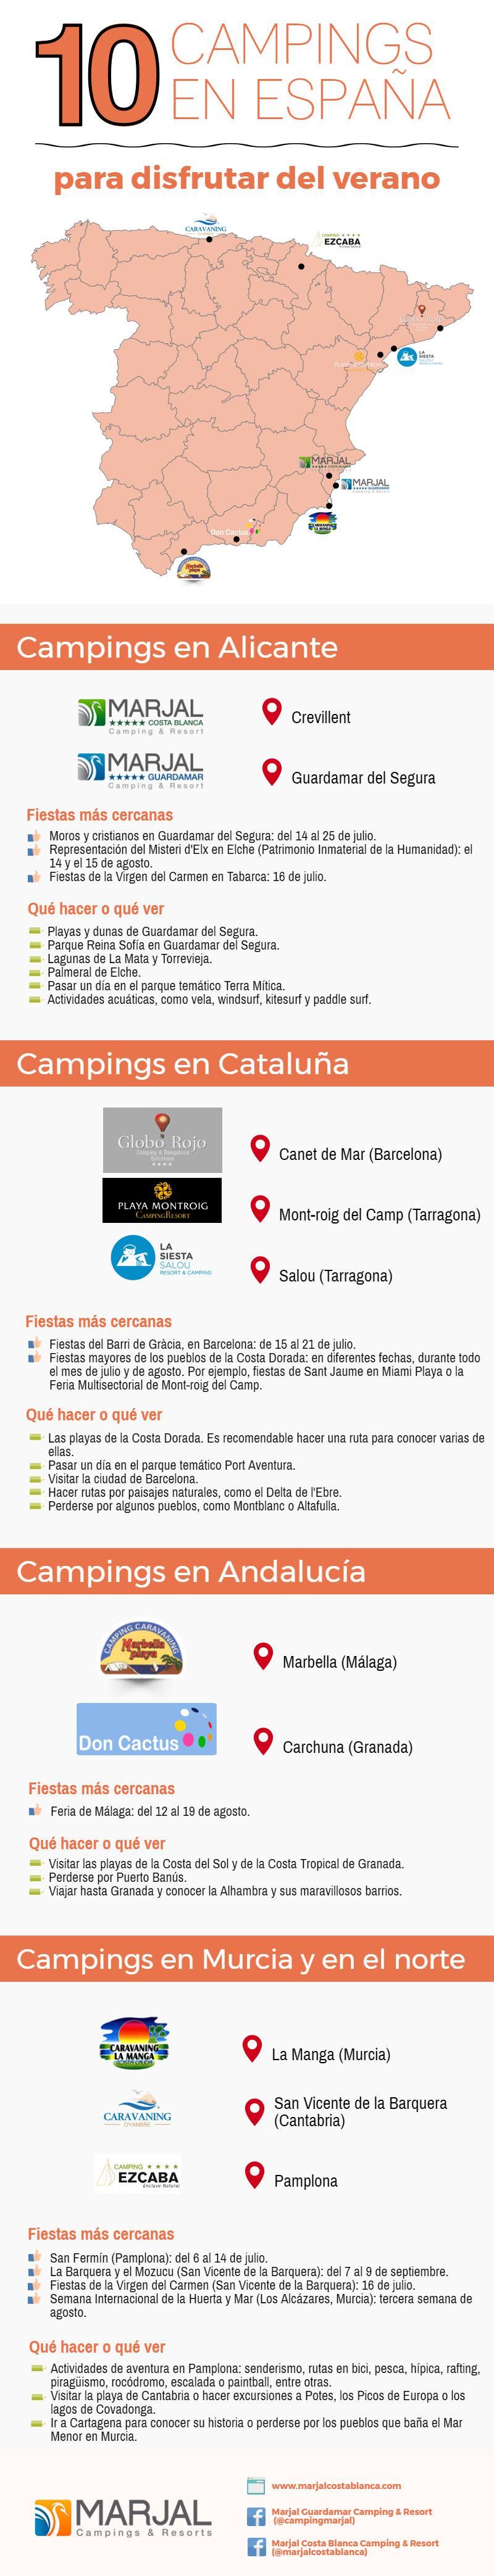 mapa de campings en España